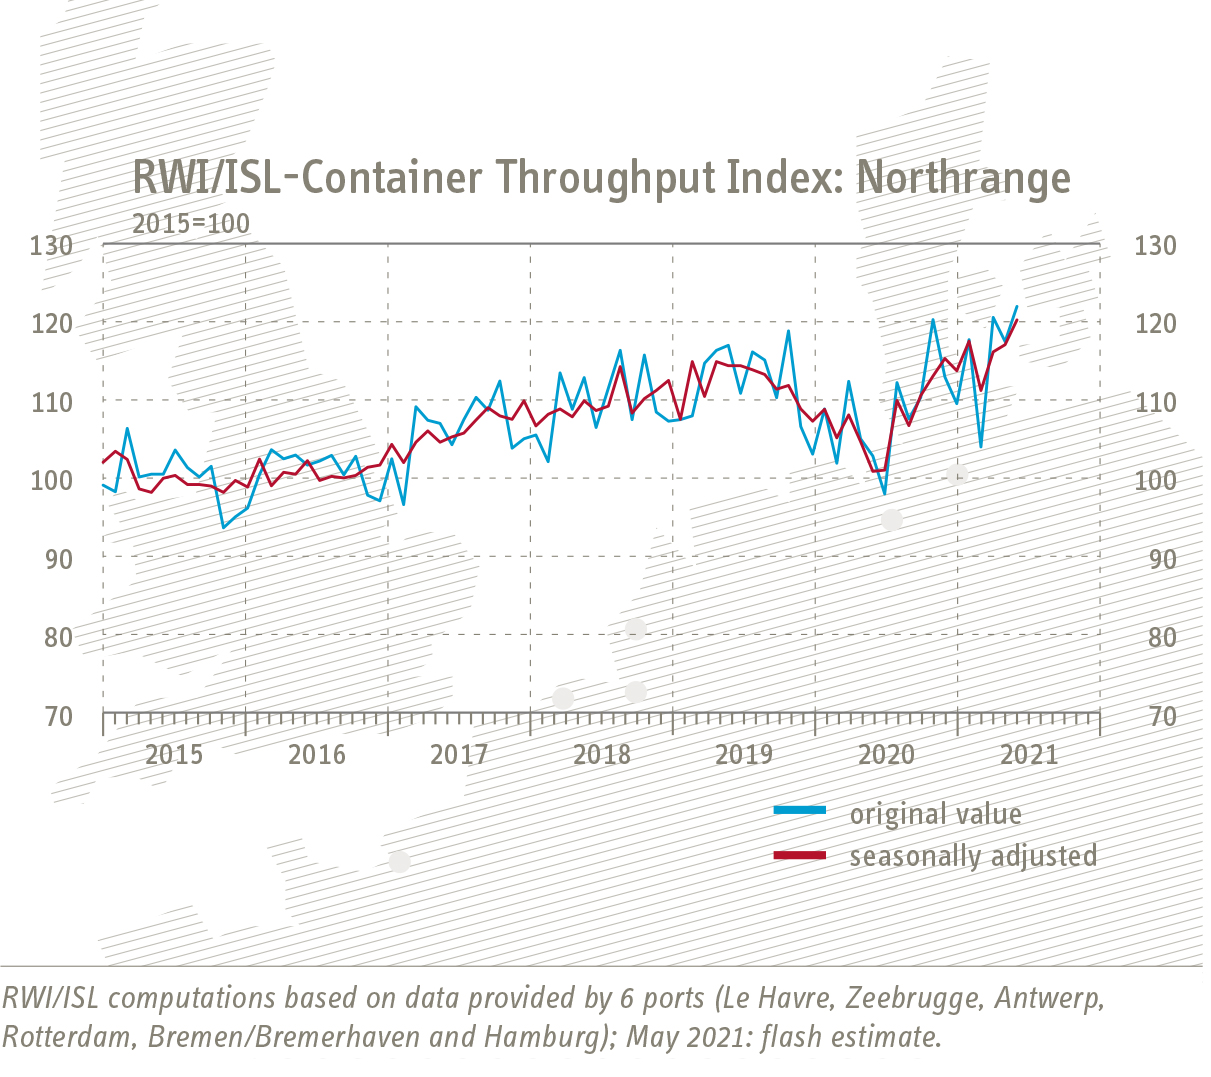 Grafik Entwicklung RWI/ISL-Containerumschlag-Index Nordrange